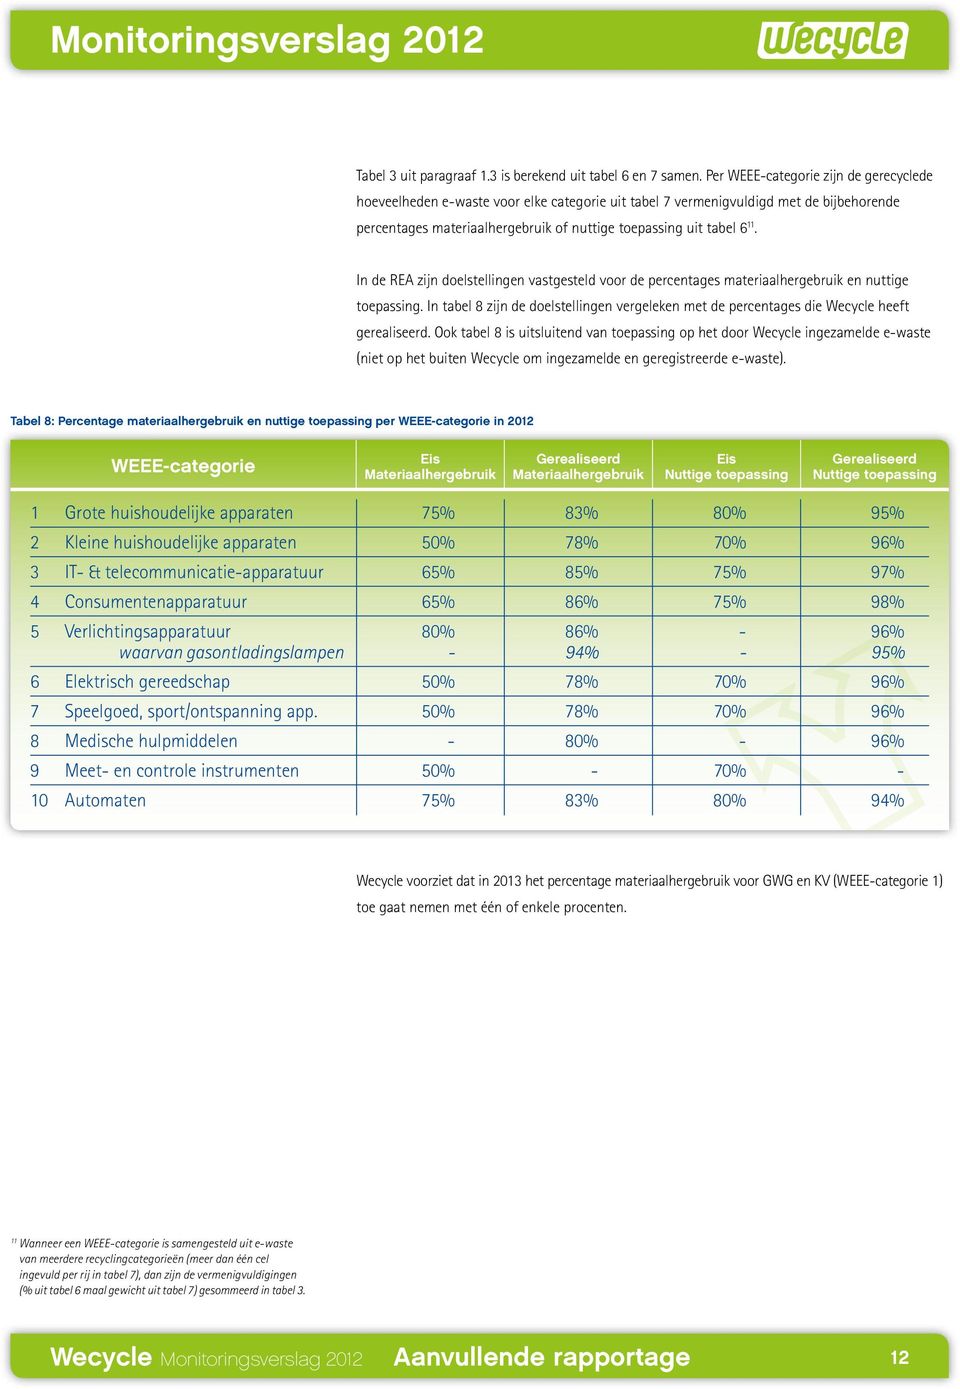 In de REA zijn doelstellingen vastgesteld voor de percentages materiaalhergebruik en nuttige toepassing. In tabel 8 zijn de doelstellingen vergeleken met de percentages die Wecycle heeft gerealiseerd.